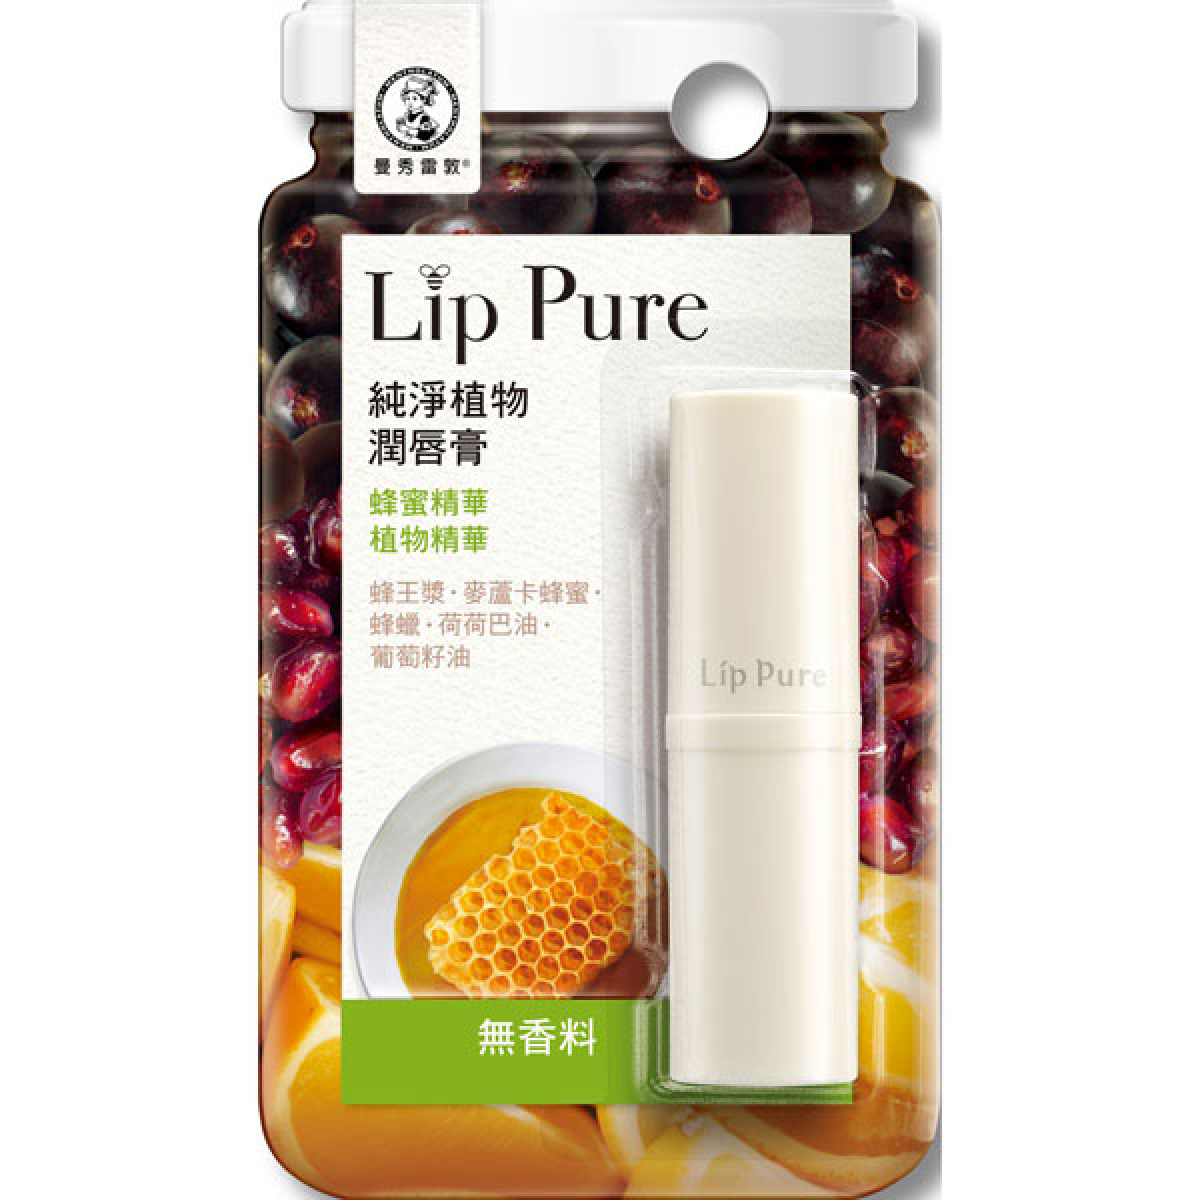 曼秀雷敦-LipPure纯净植物润唇膏-无香料4g